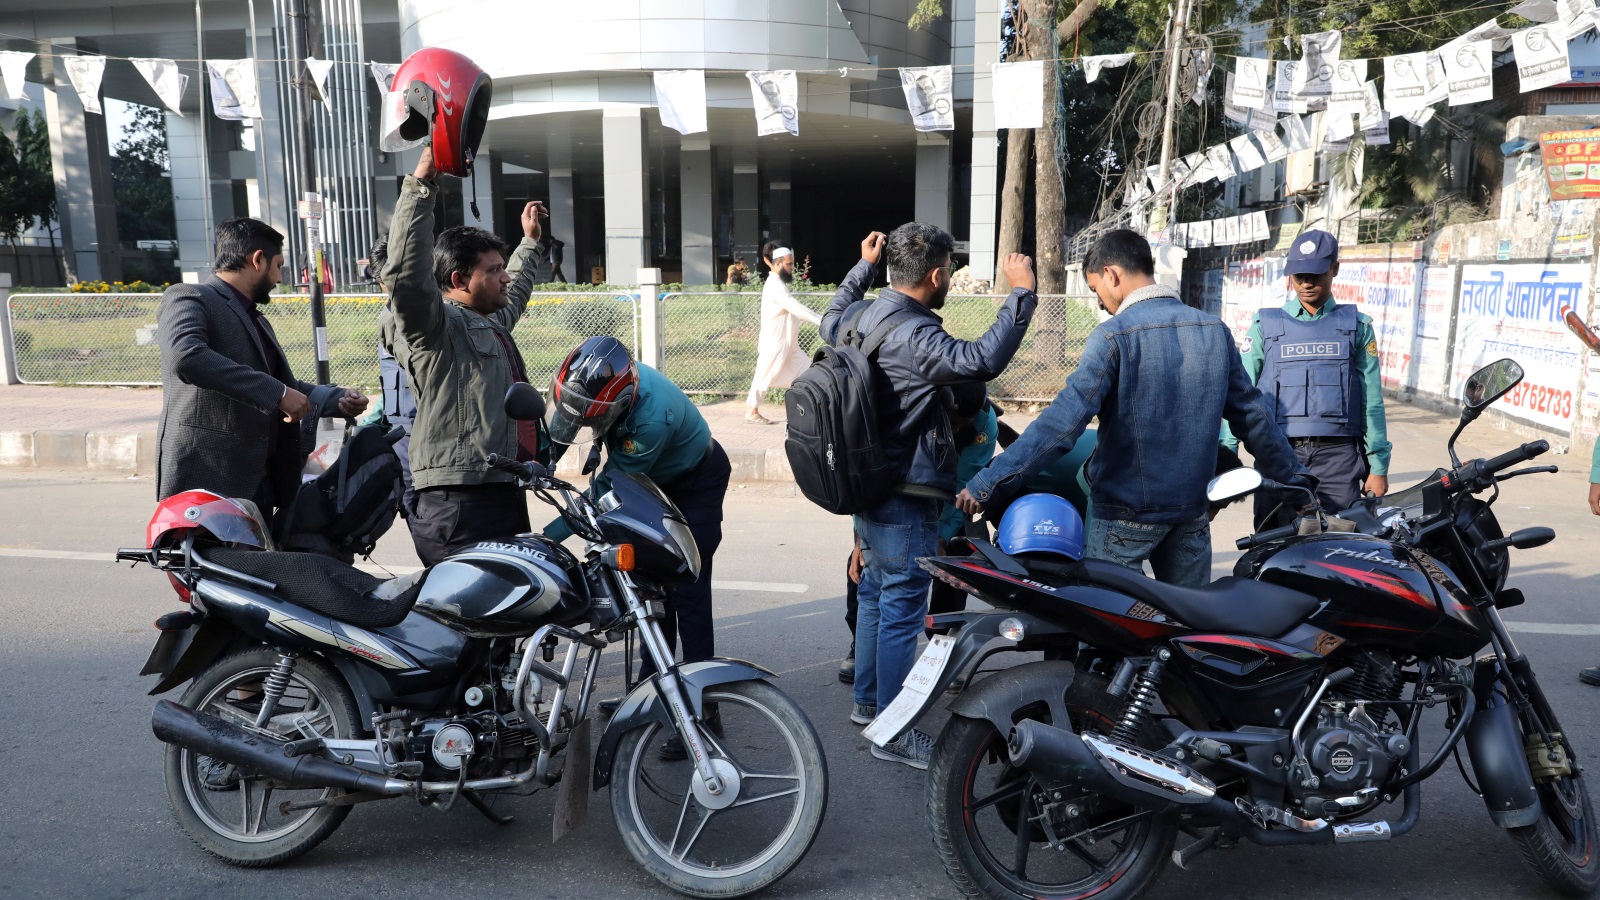 الشرطة تفتش الموطنين قبل توجههم لمراكز الاقتراع بالعاصمة داكا (رويترز)